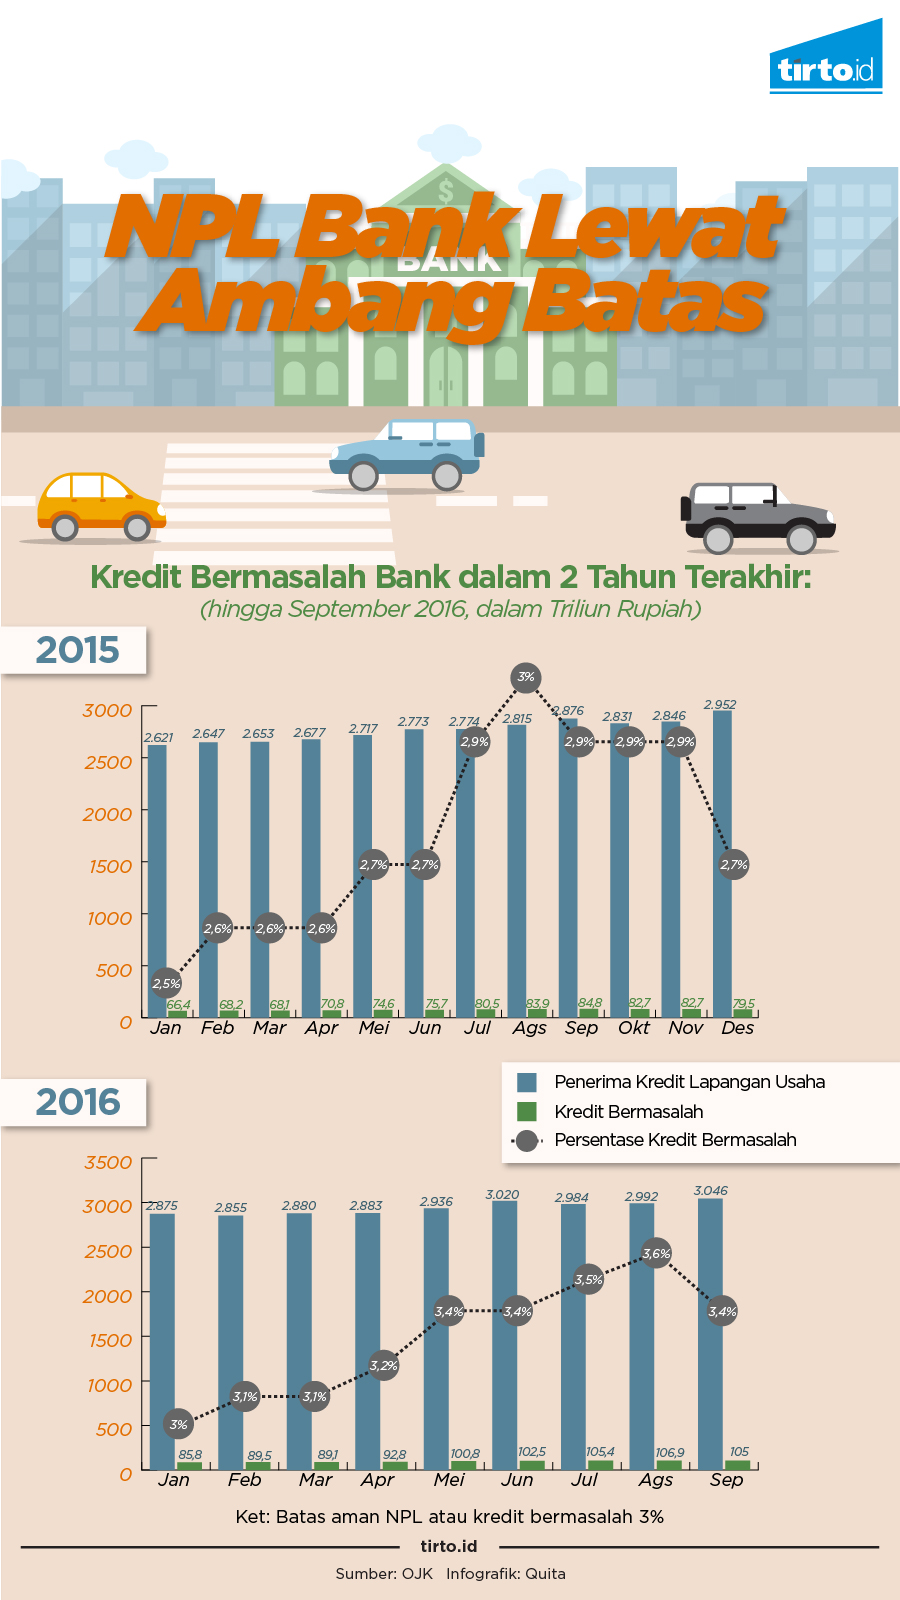 Infografik NPL Bank Lewat Ambang Batas